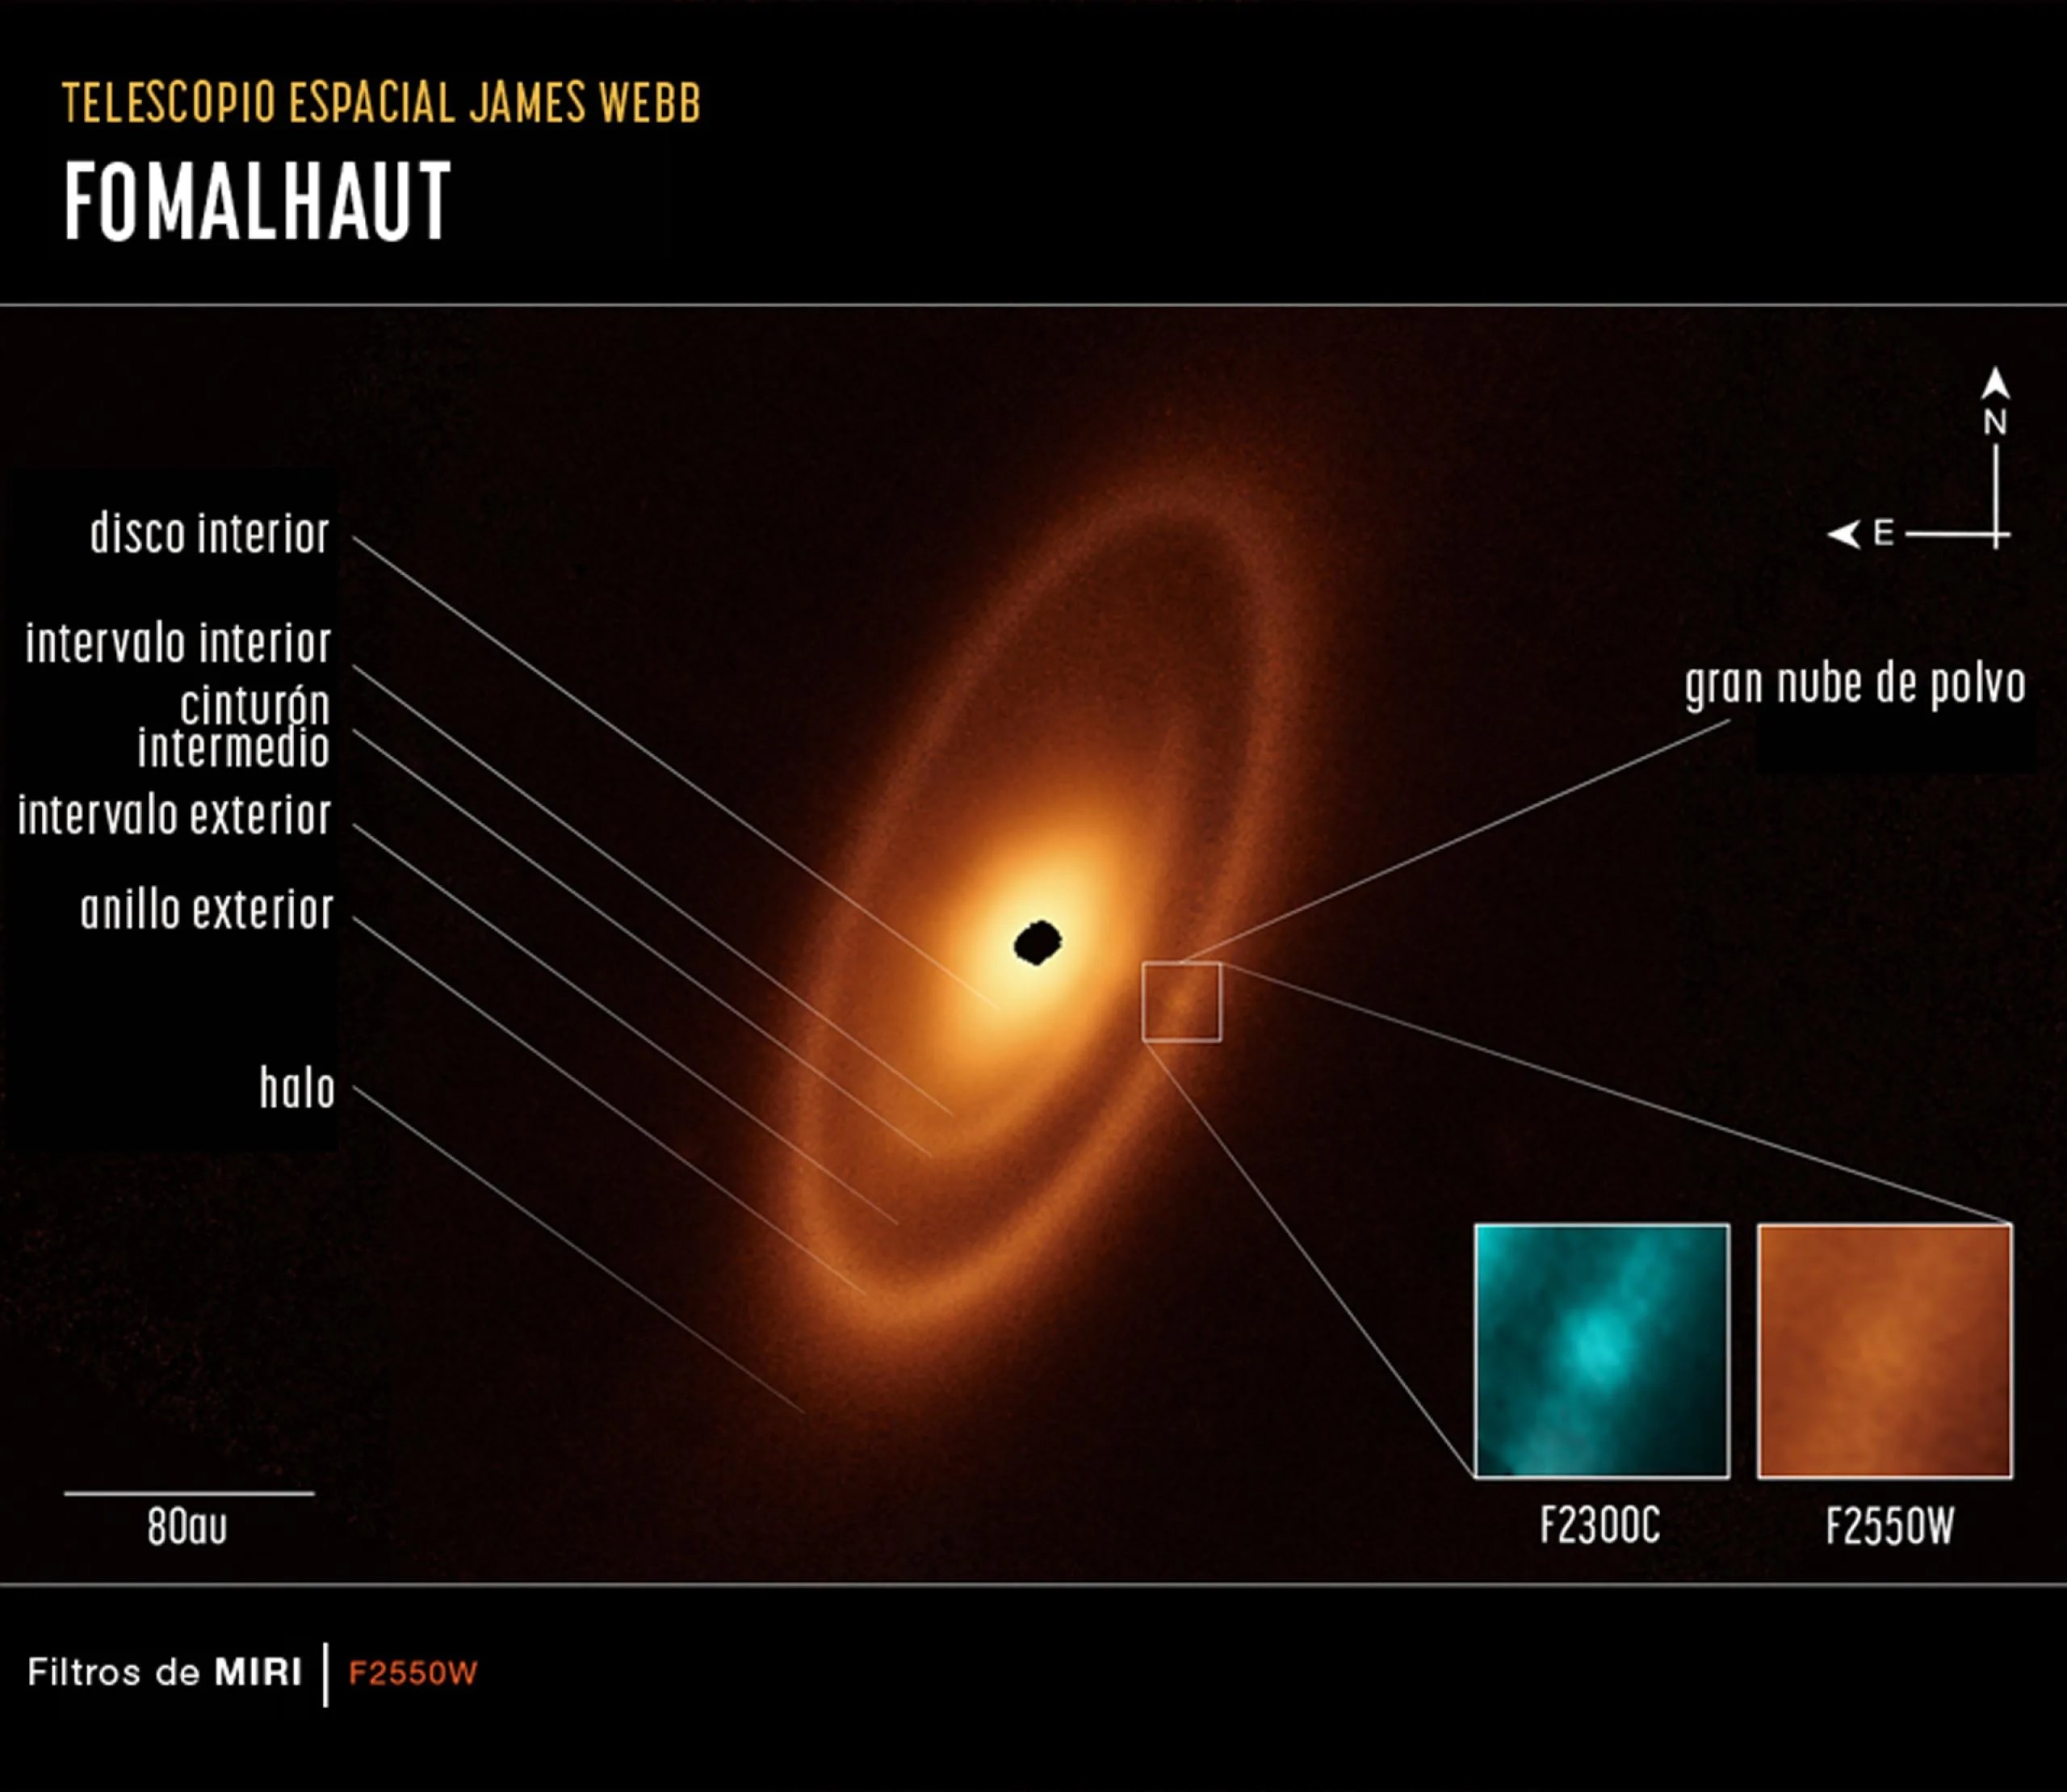 Esta imagen del disco de escombros de polvo que rodea a la joven estrella Fomalhaut fue obtenida con el instrumento de infrarrojo medio de Webb. La imagen revela tres cinturones anidados que se extienden a una distancia de 23.000 millones de km (14.000 millones de millas) de la estrella. Las etiquetas de la izquierda indican las características individuales. A la derecha, se destaca una gran nube de polvo y las imágenes en los recuadros la muestran en dos longitudes de ondas infrarrojas: 23 y 25,5 micras.